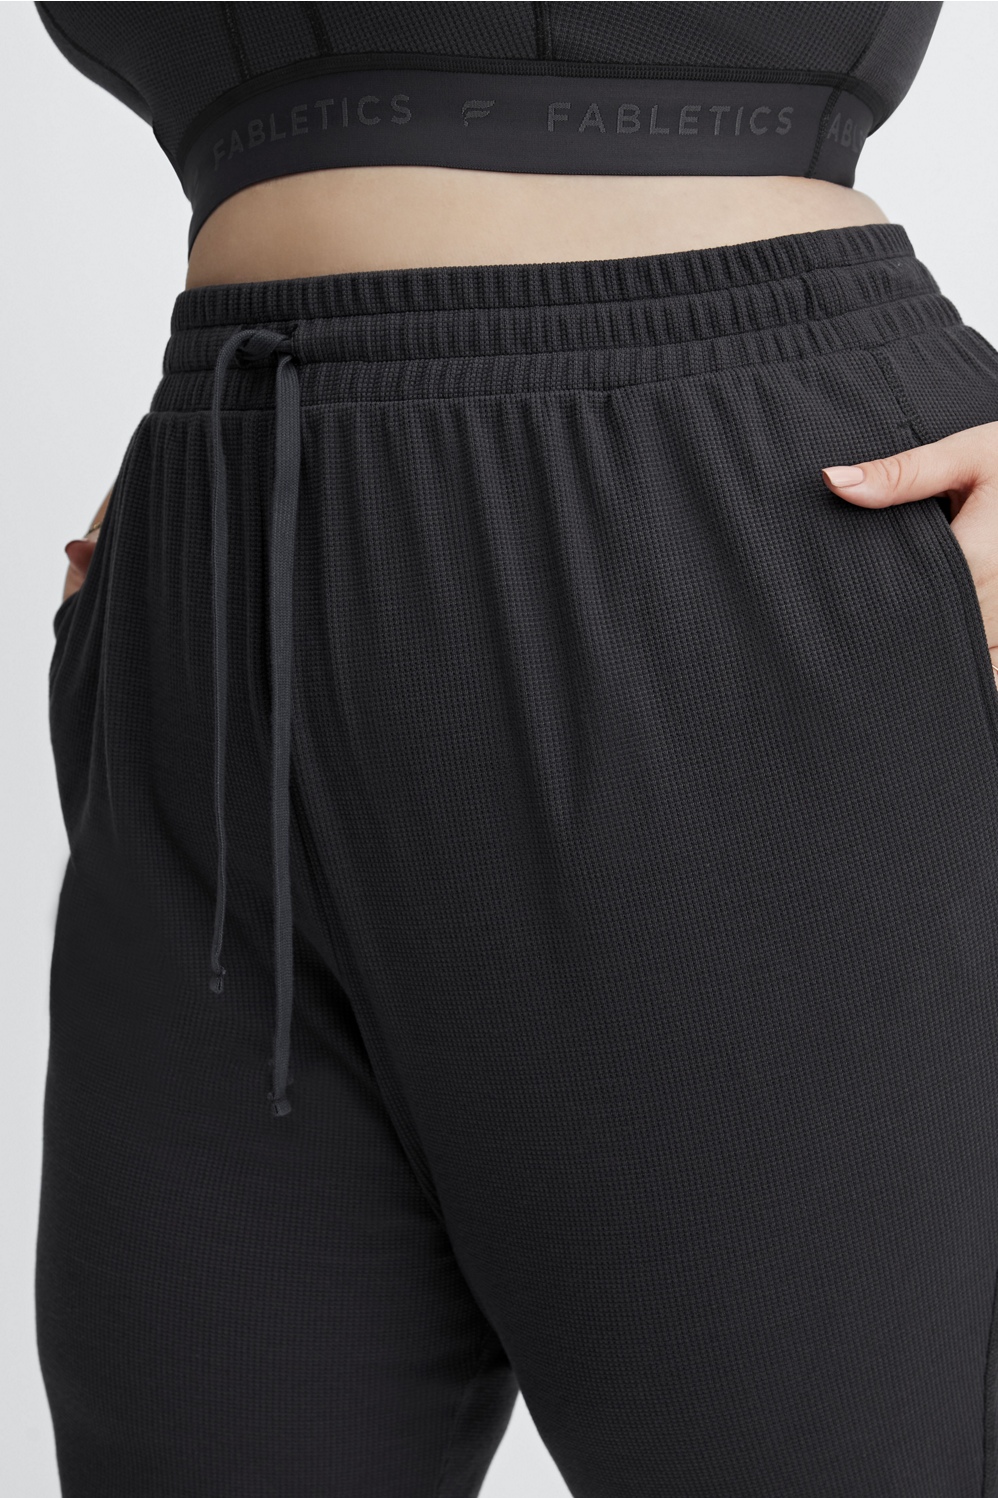 Fabletics Black Sweatpants Size M - 47% off